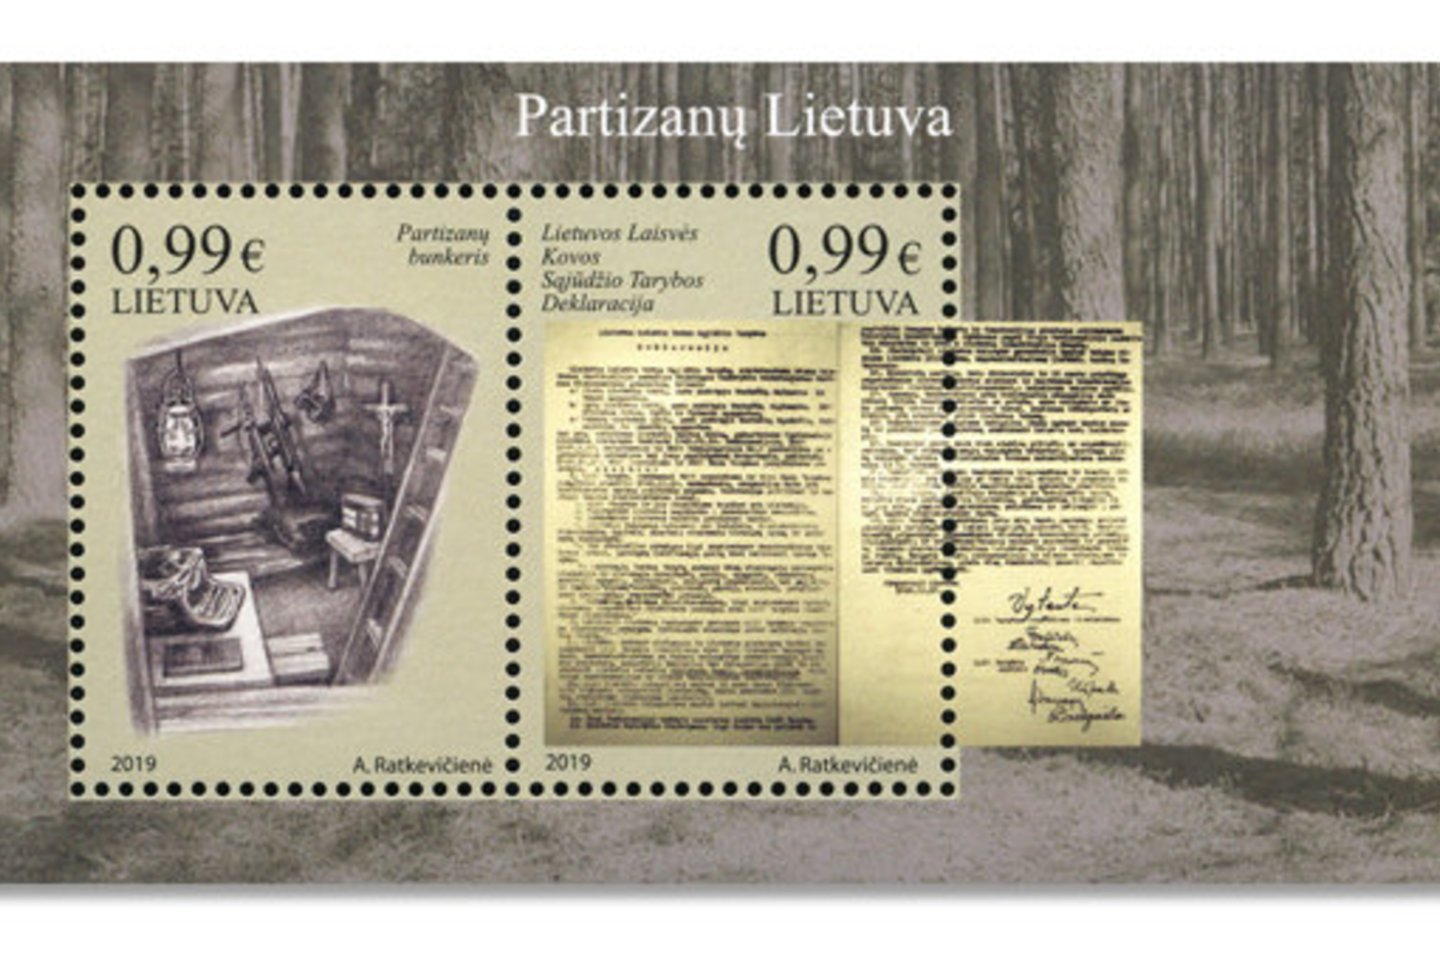  Pašto ženklų blokas „Partizanų Lietuva“.<br> Leidėjų nuotr.